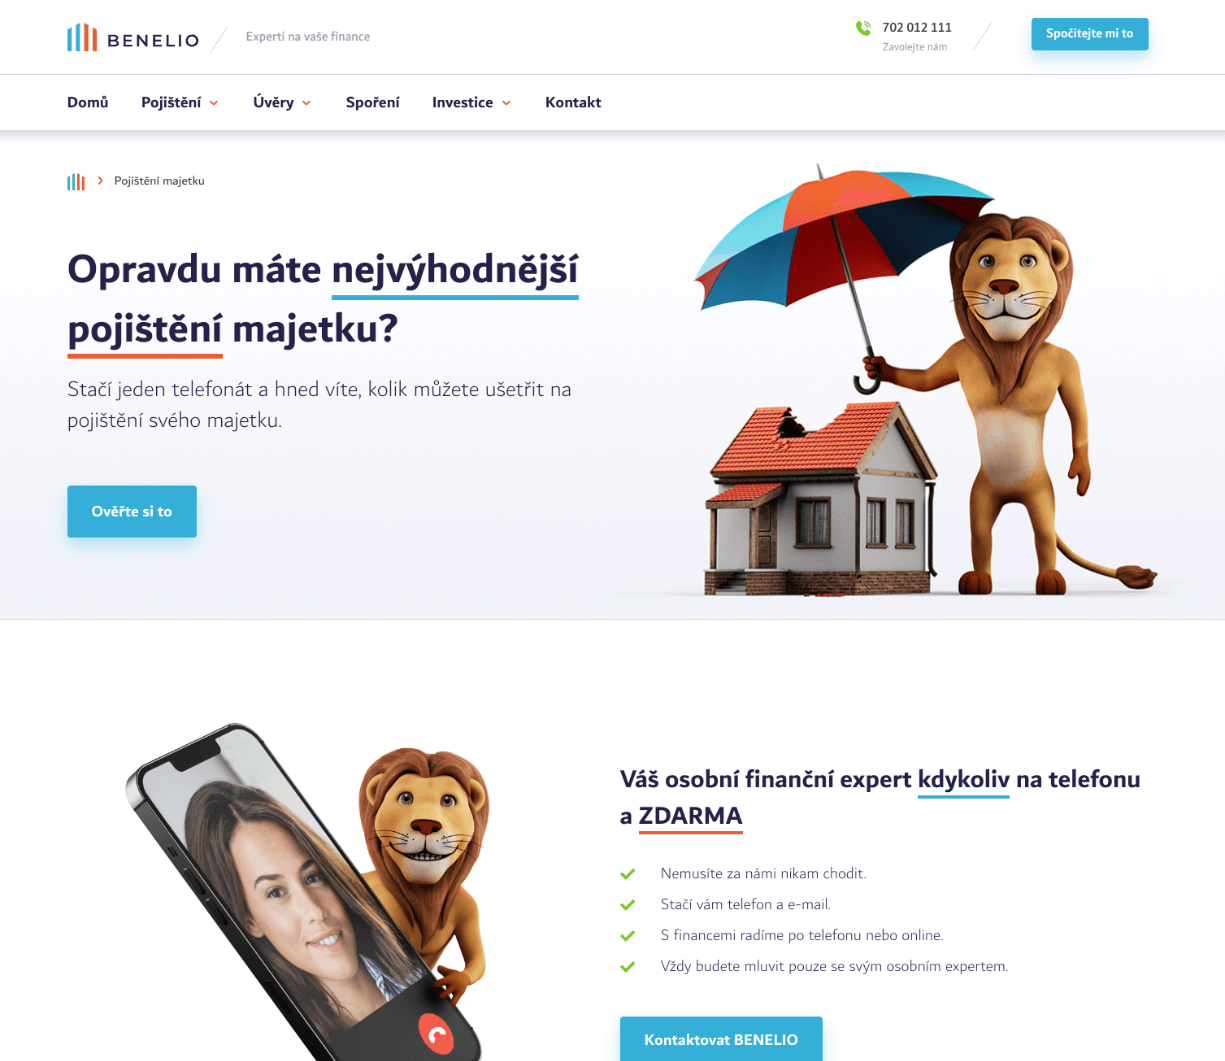 Návrh webu a copywriting pro Benelio.cz – inovativní službu finančních expertů na telefonu